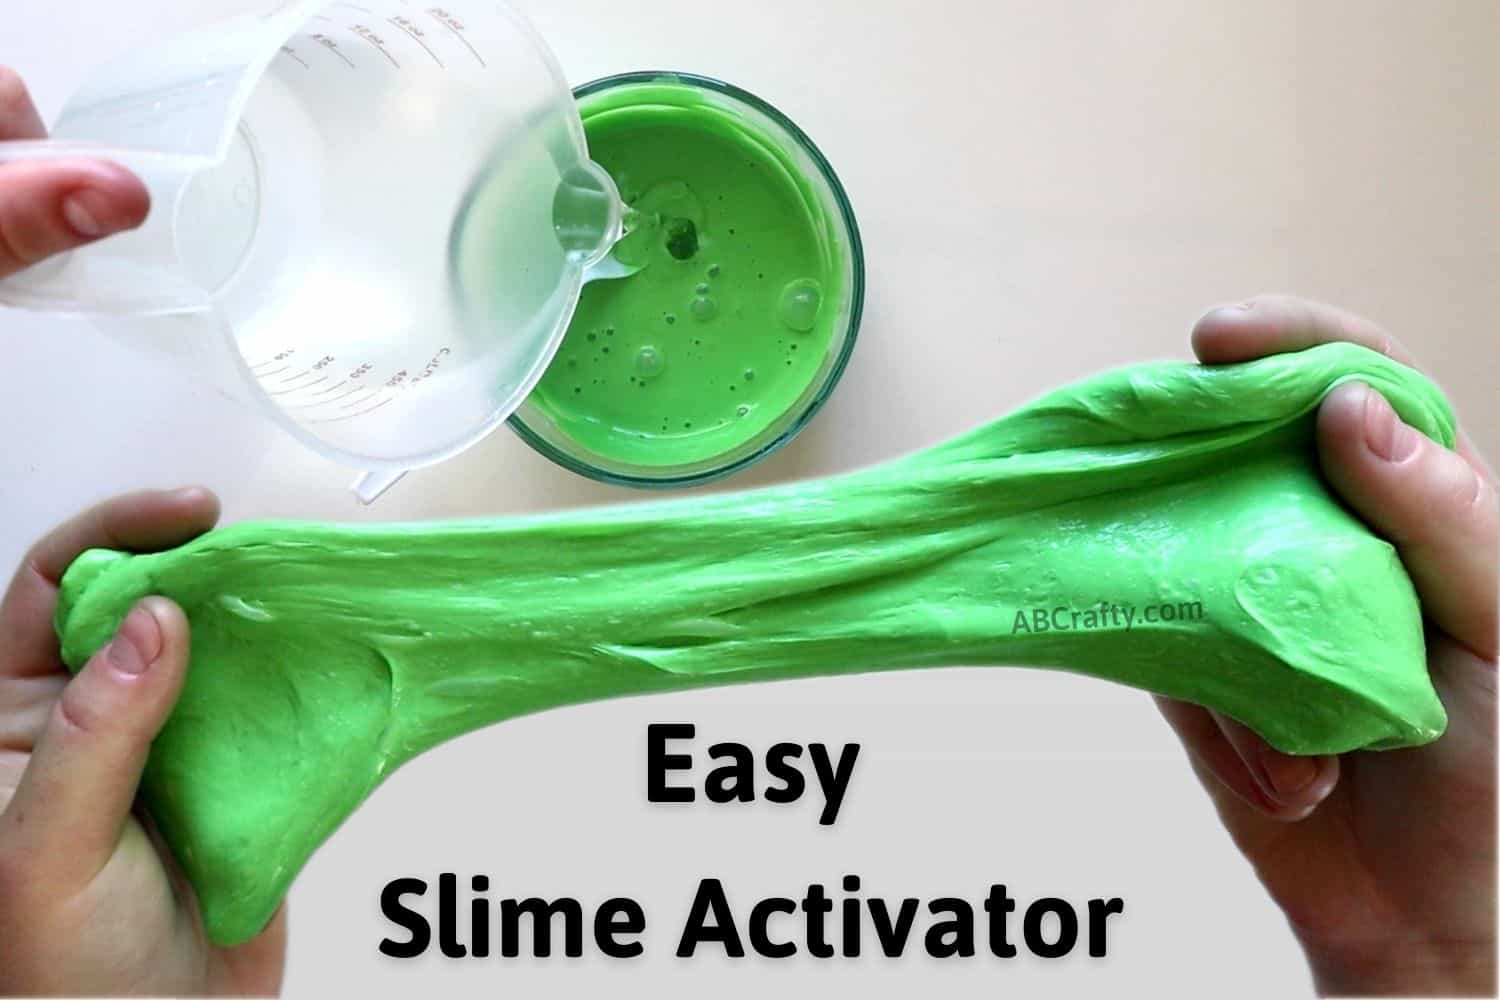 Basic Slime Ingredients - 3 Ingredient Slime Recipe No Borax